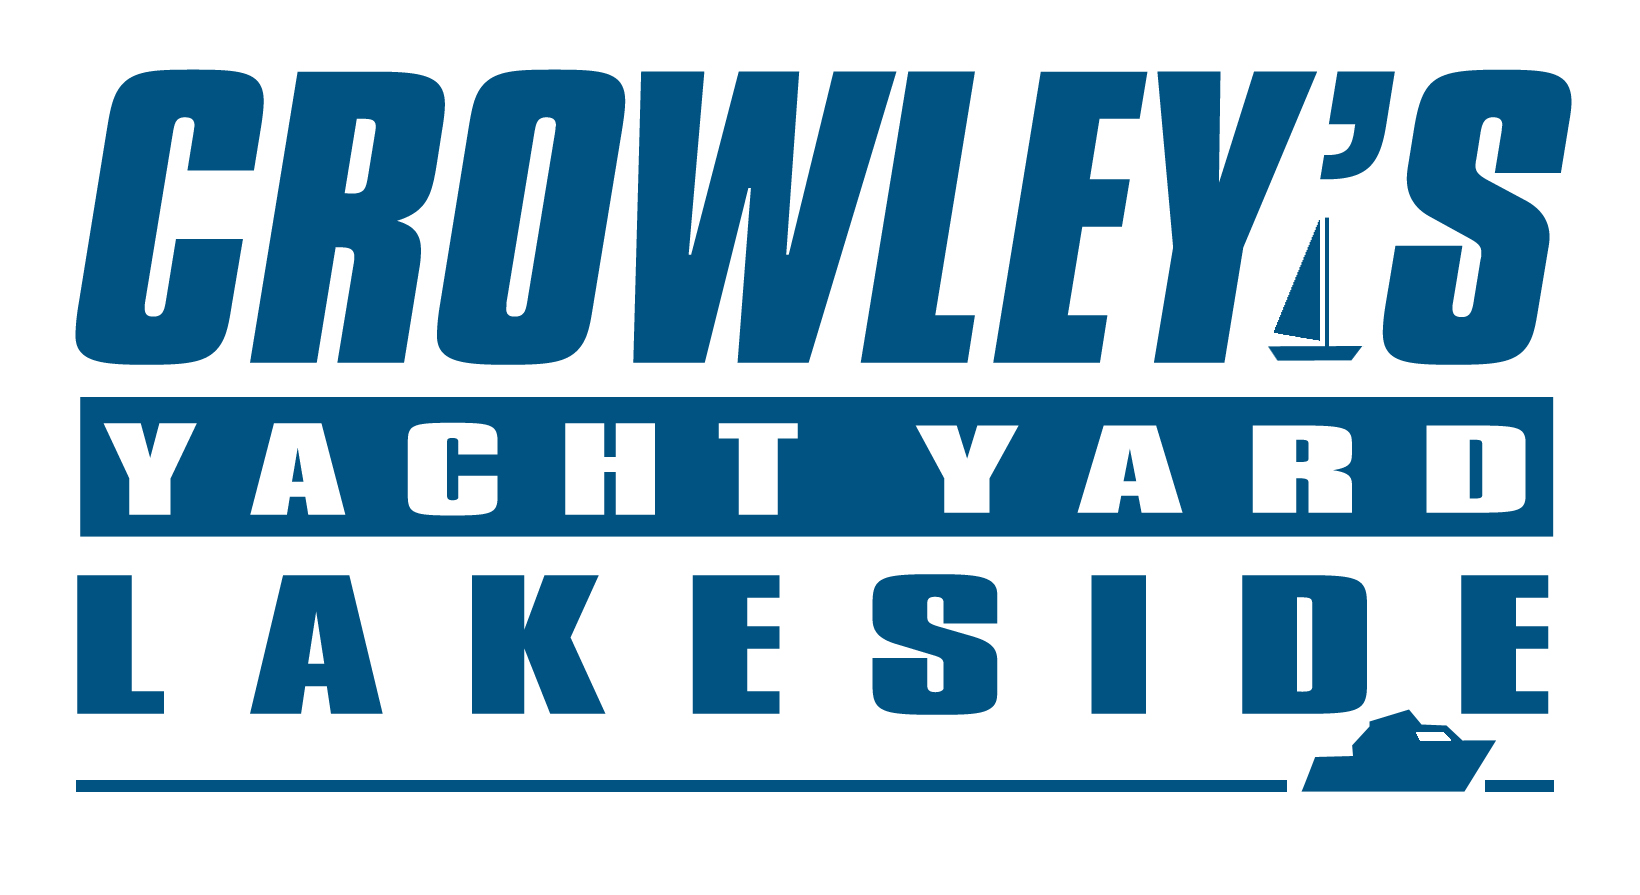 Crowleys Logo